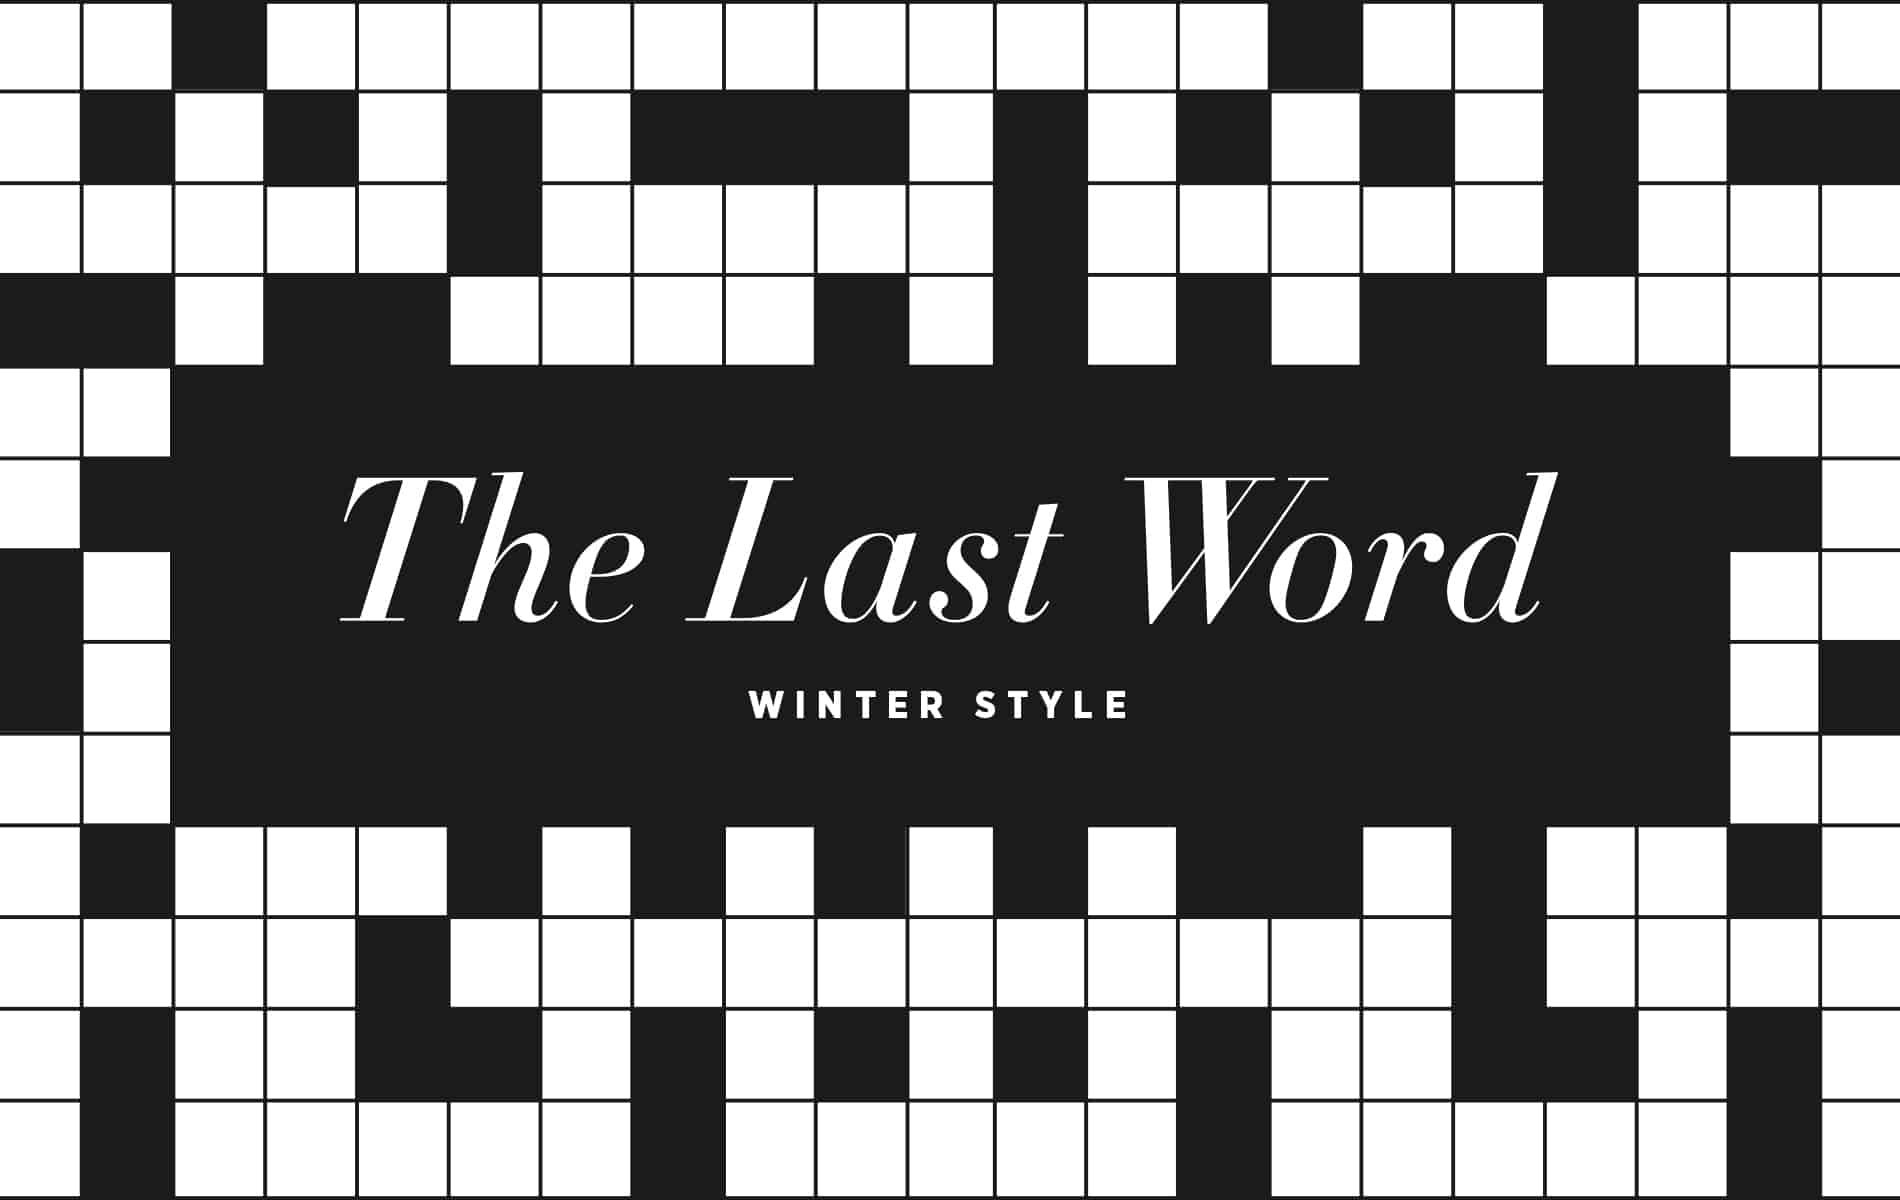 VIE magazine Crossword Puzzle Winter Style